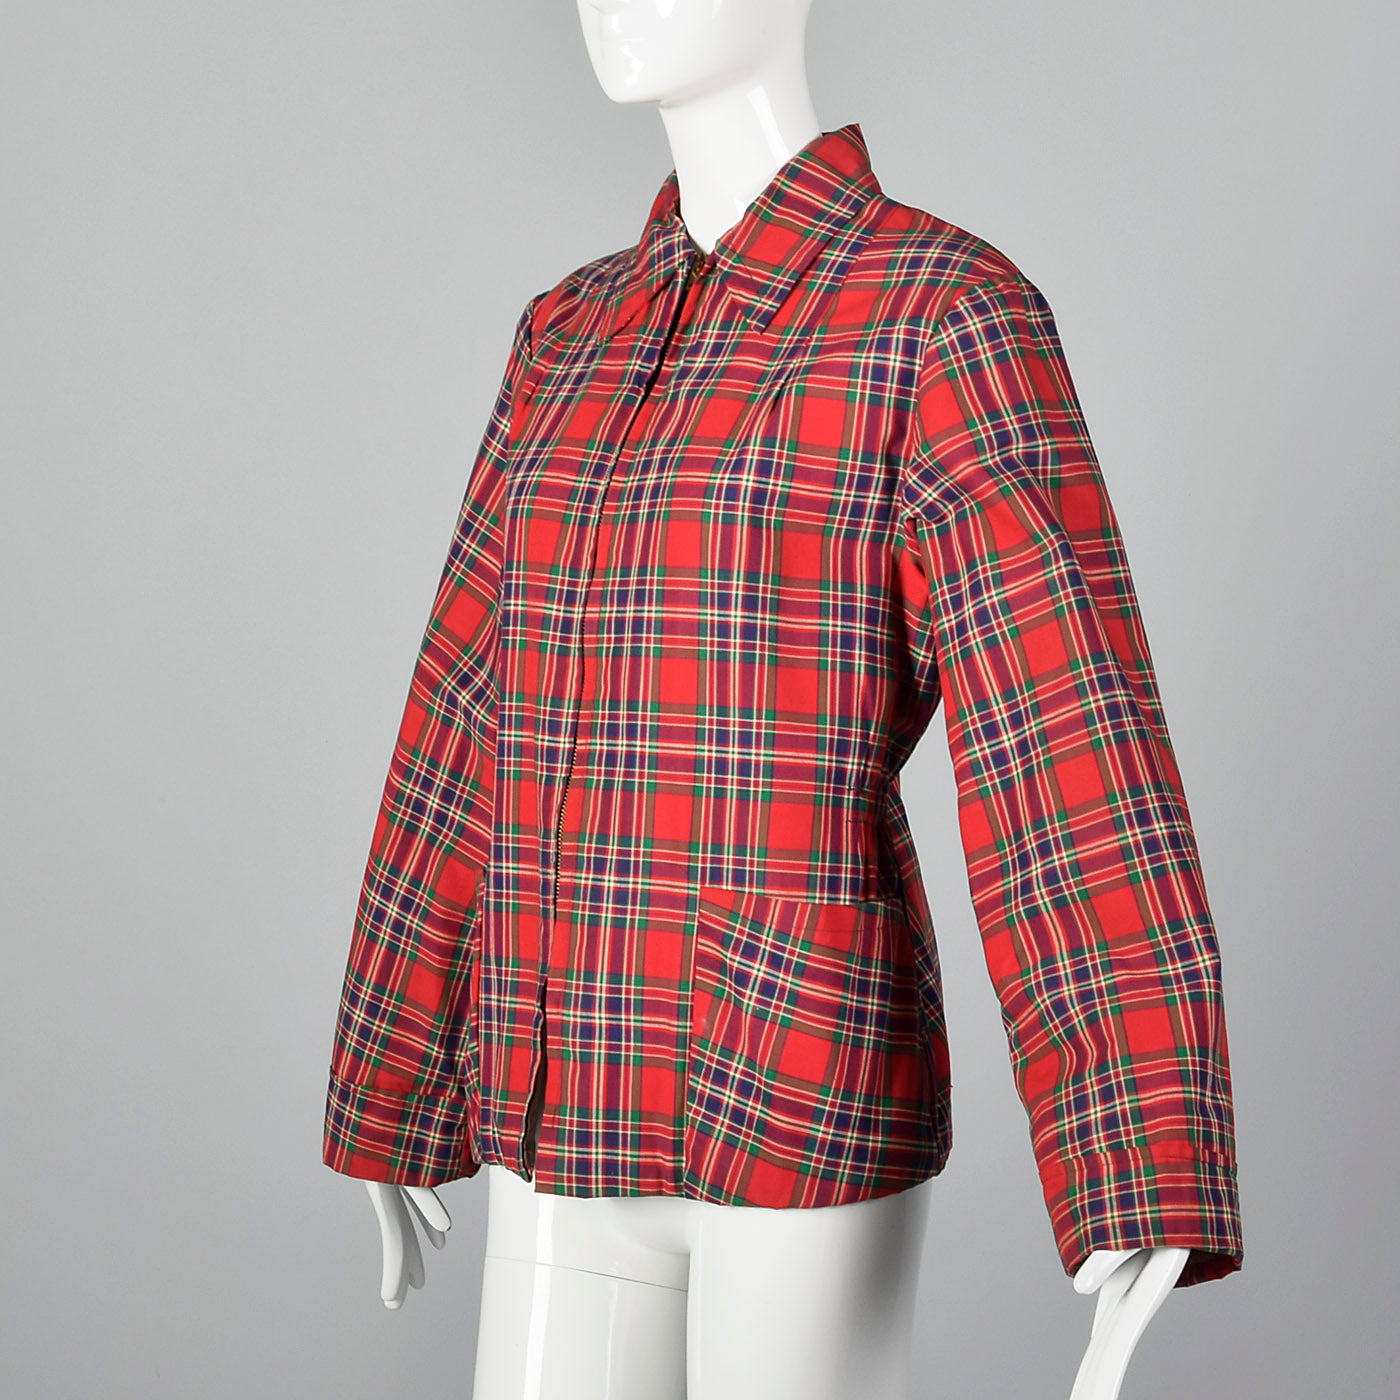 Medium 1940s Red Plaid Jacket